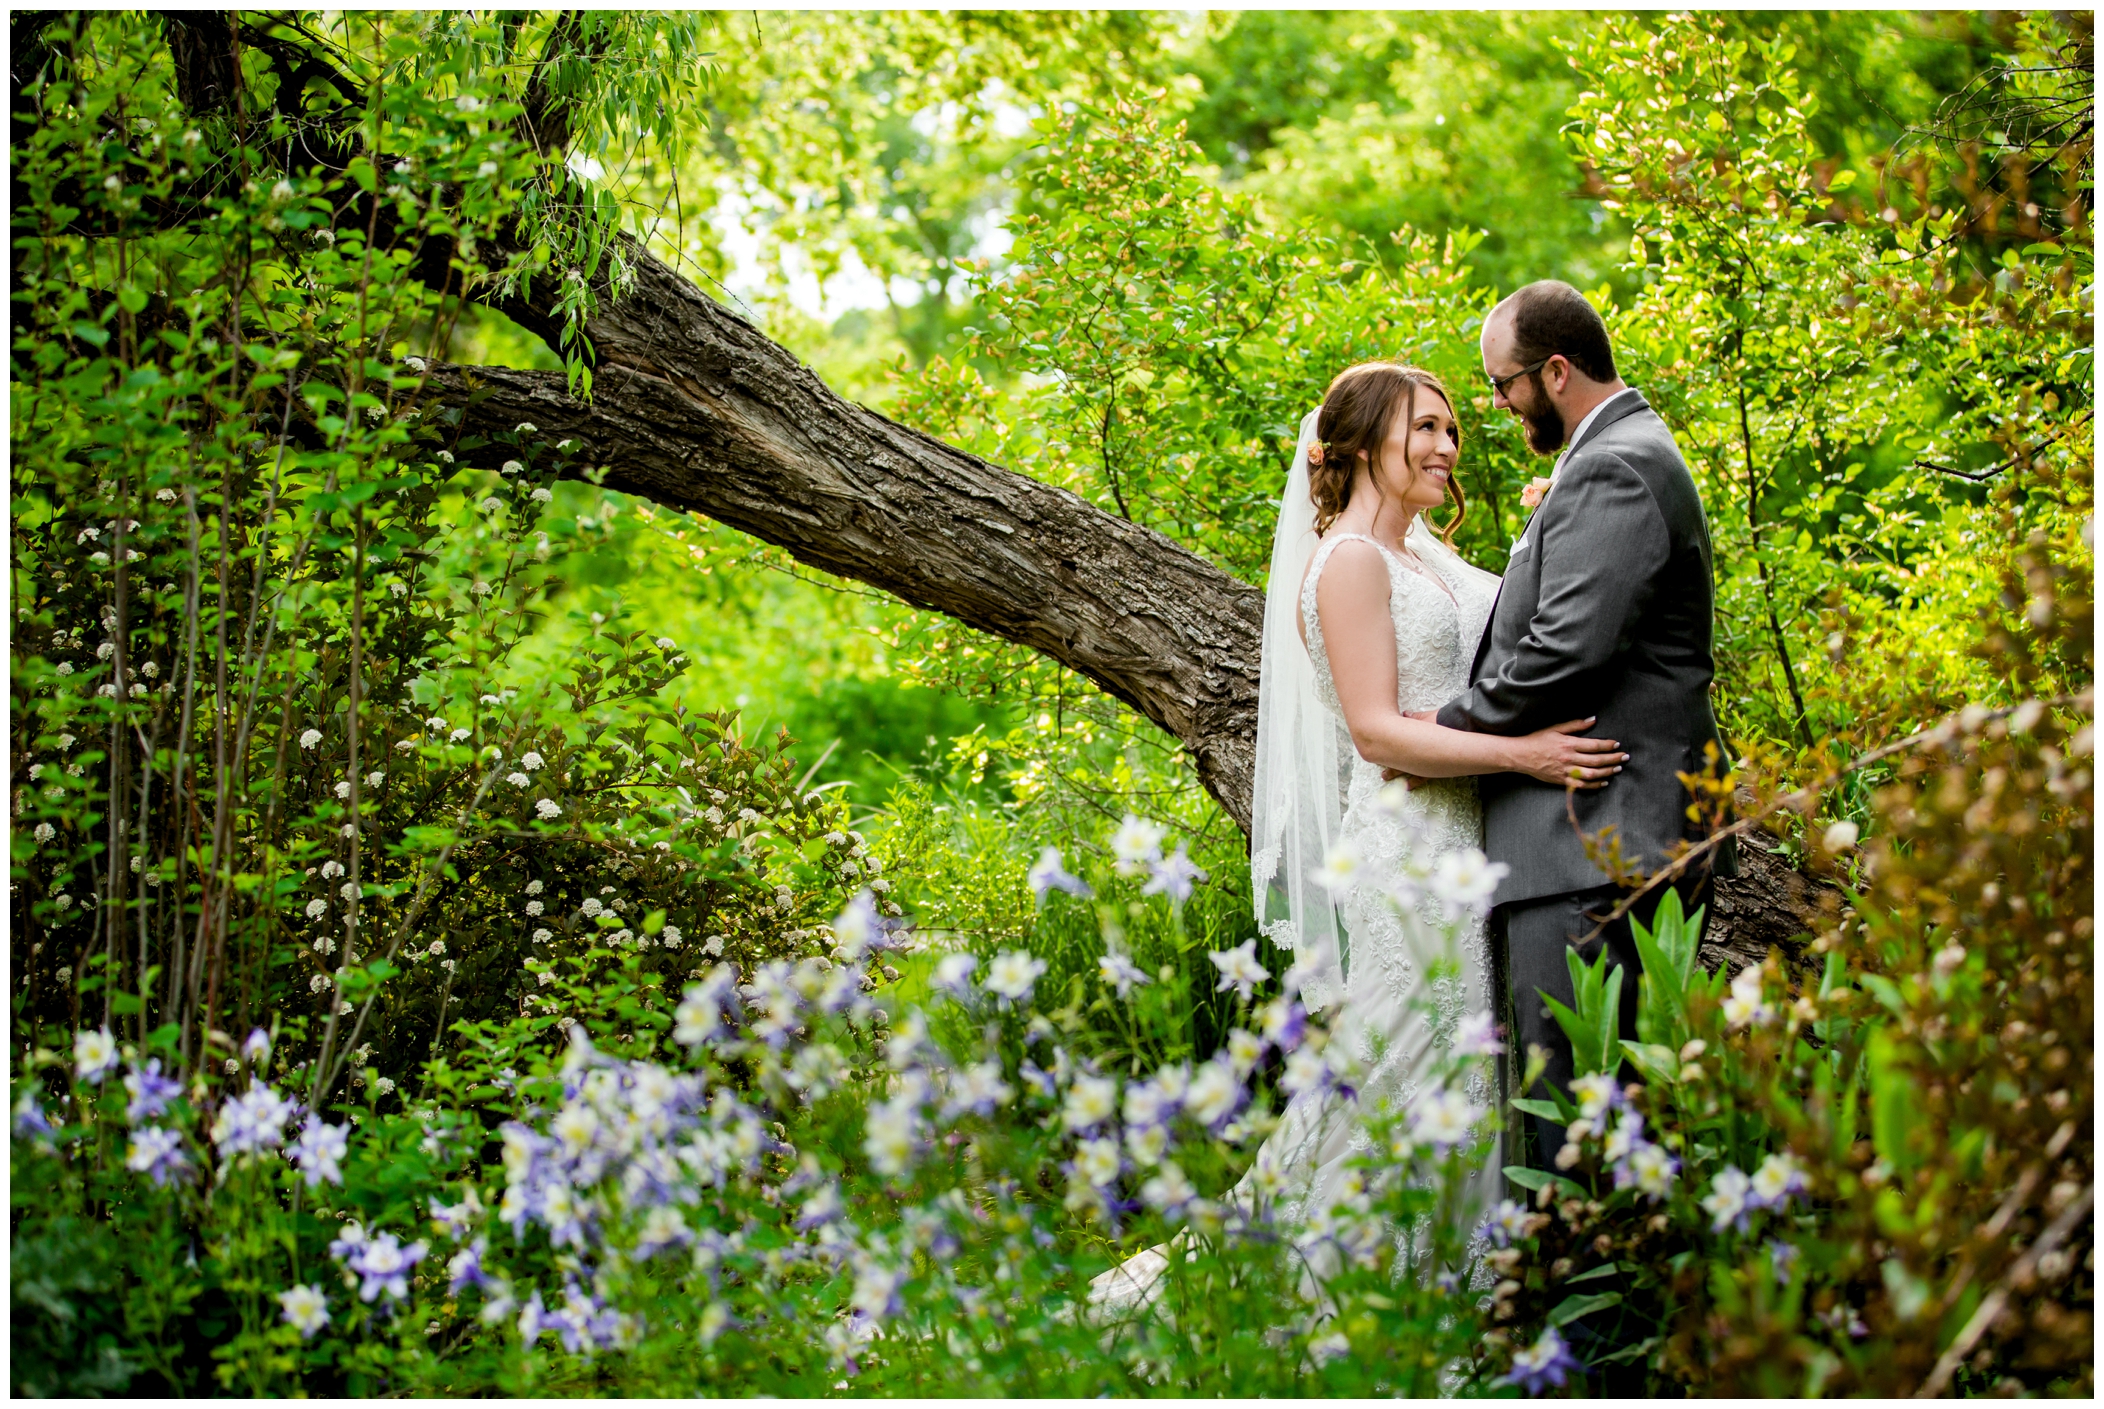 Chatfield Farms wedding photos in Denver Colorado gardens